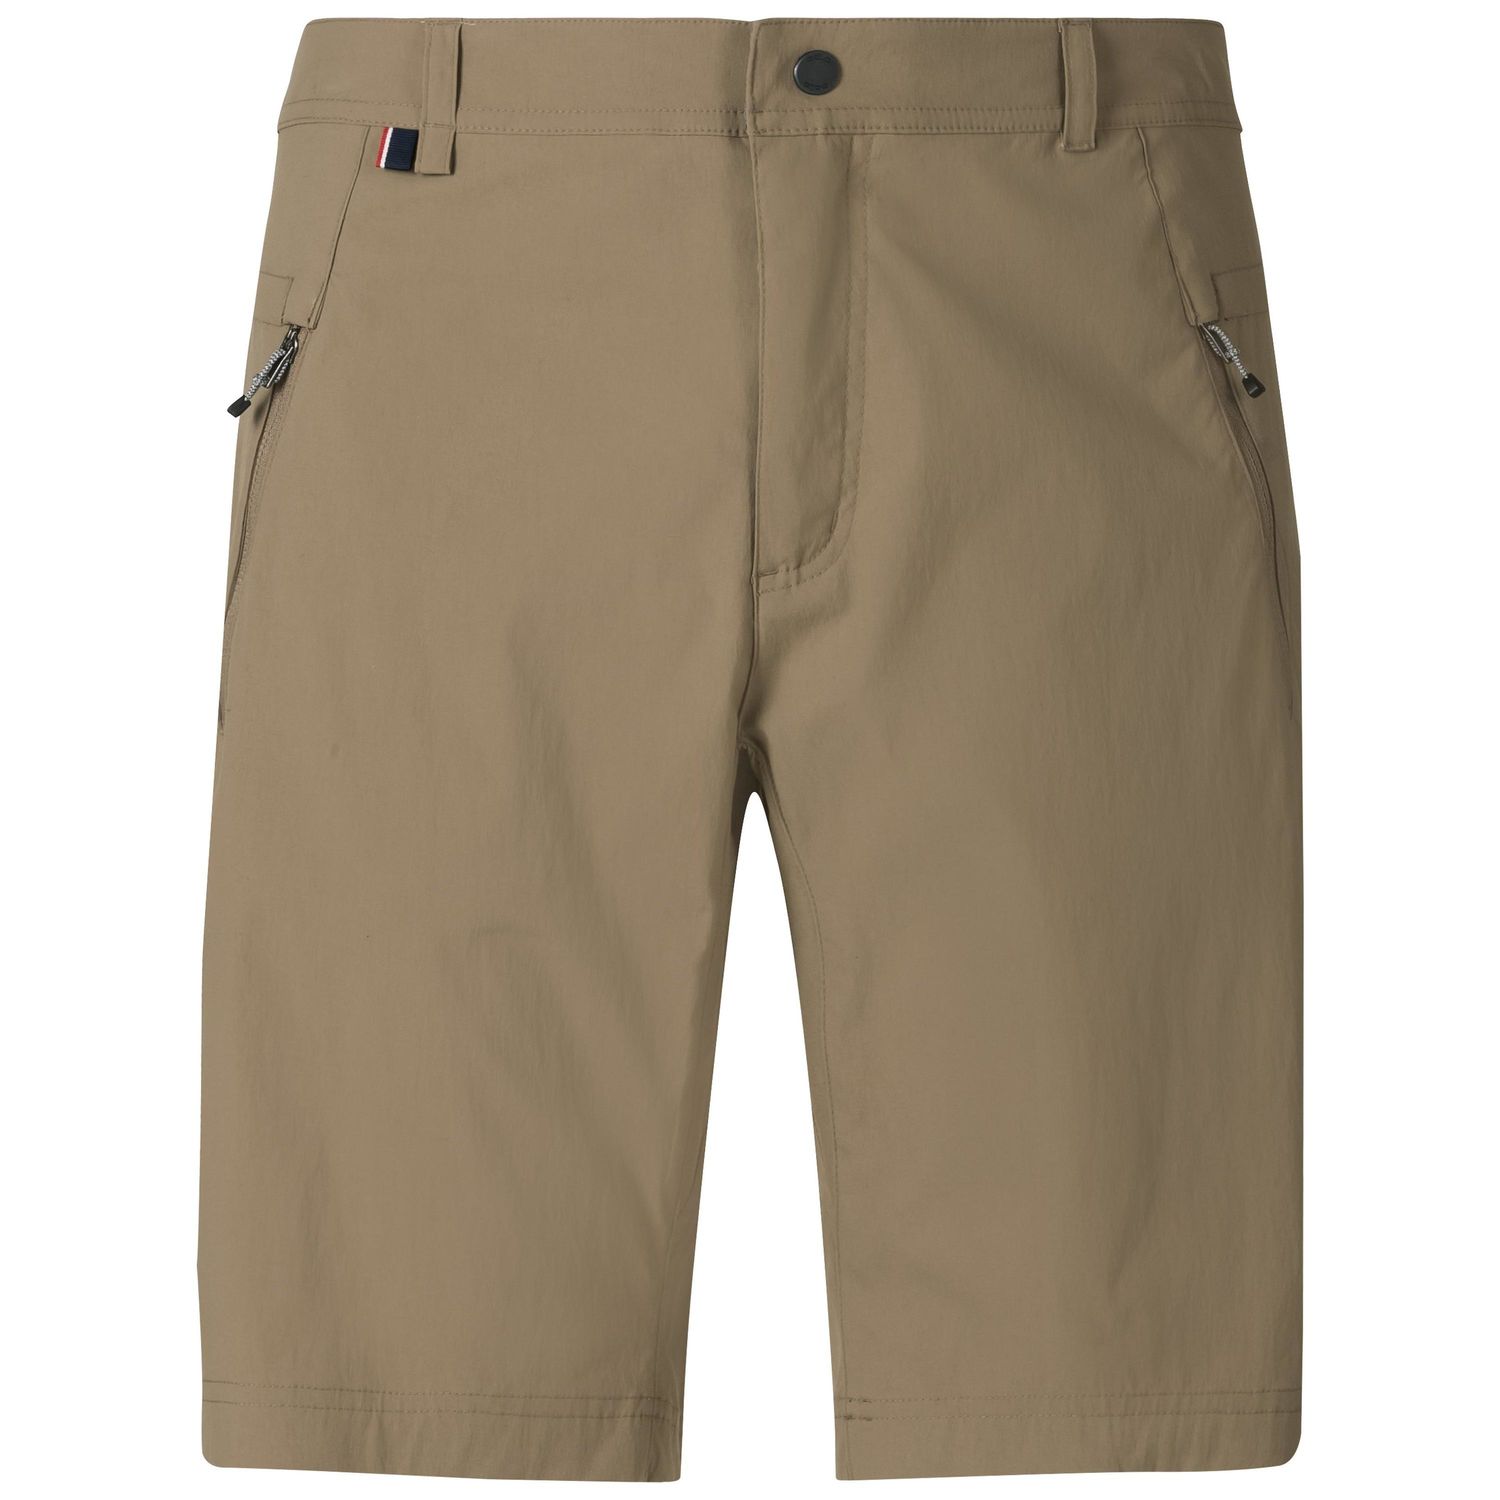 Odlo Wedgemount - Walking shorts - Men's